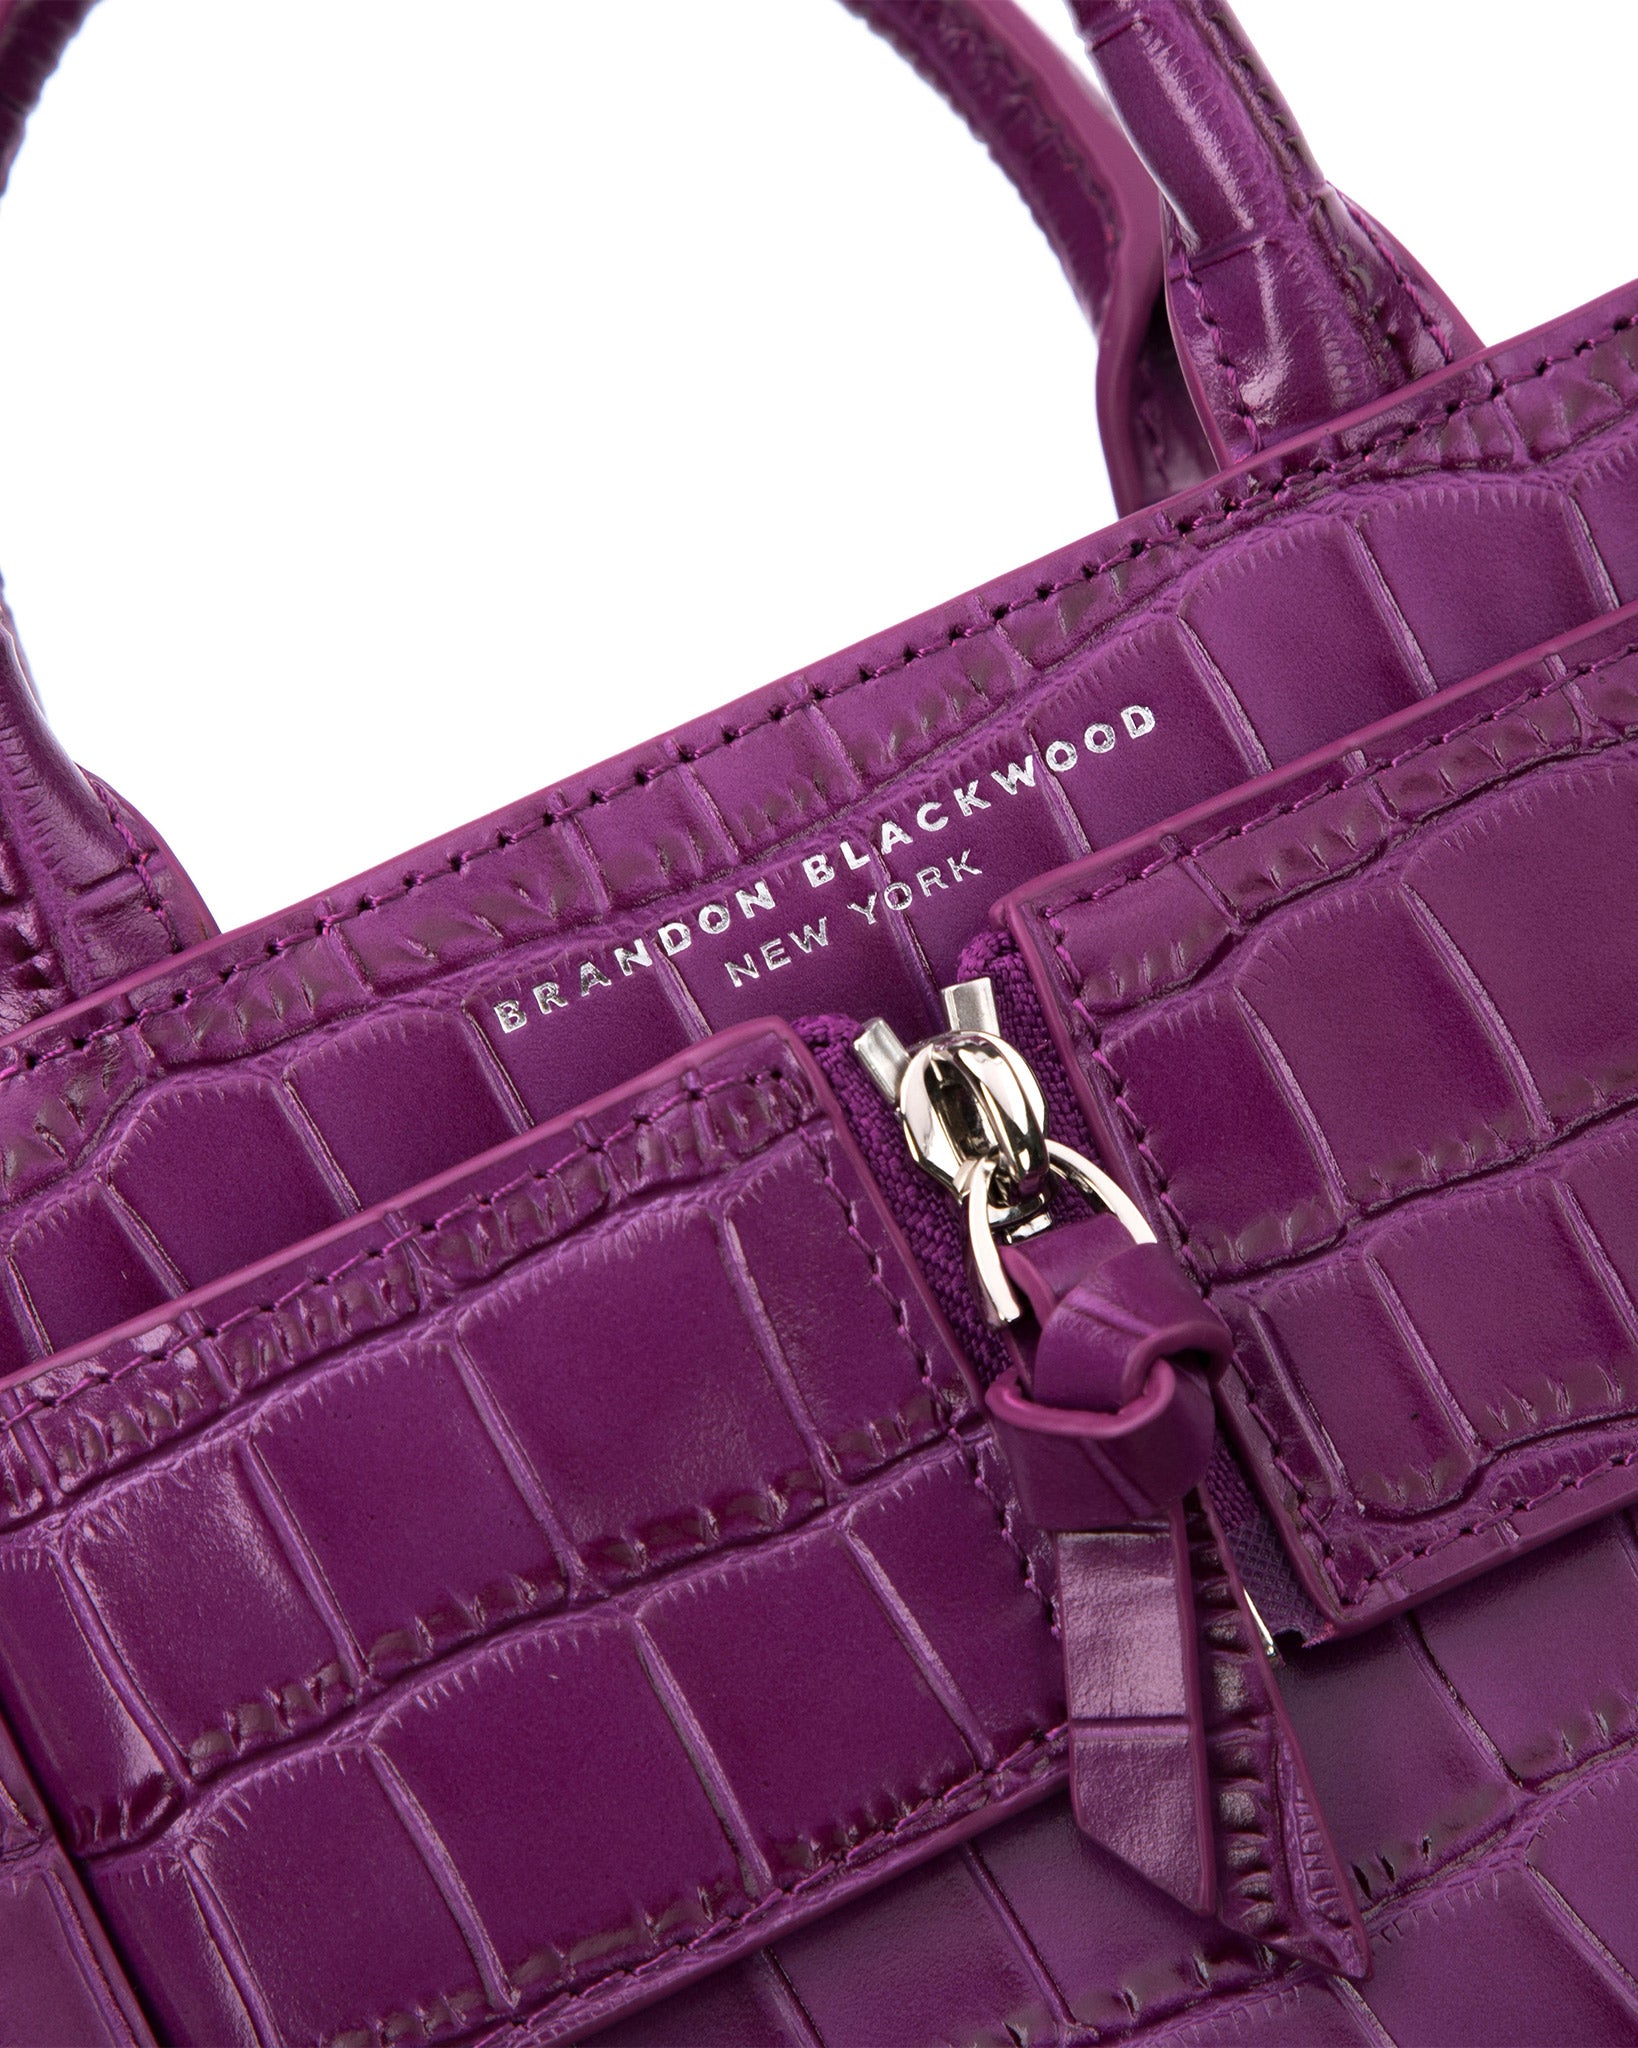 Brandon Blackwood New York - Kuei Bag - Purple Croc Embossed Leather